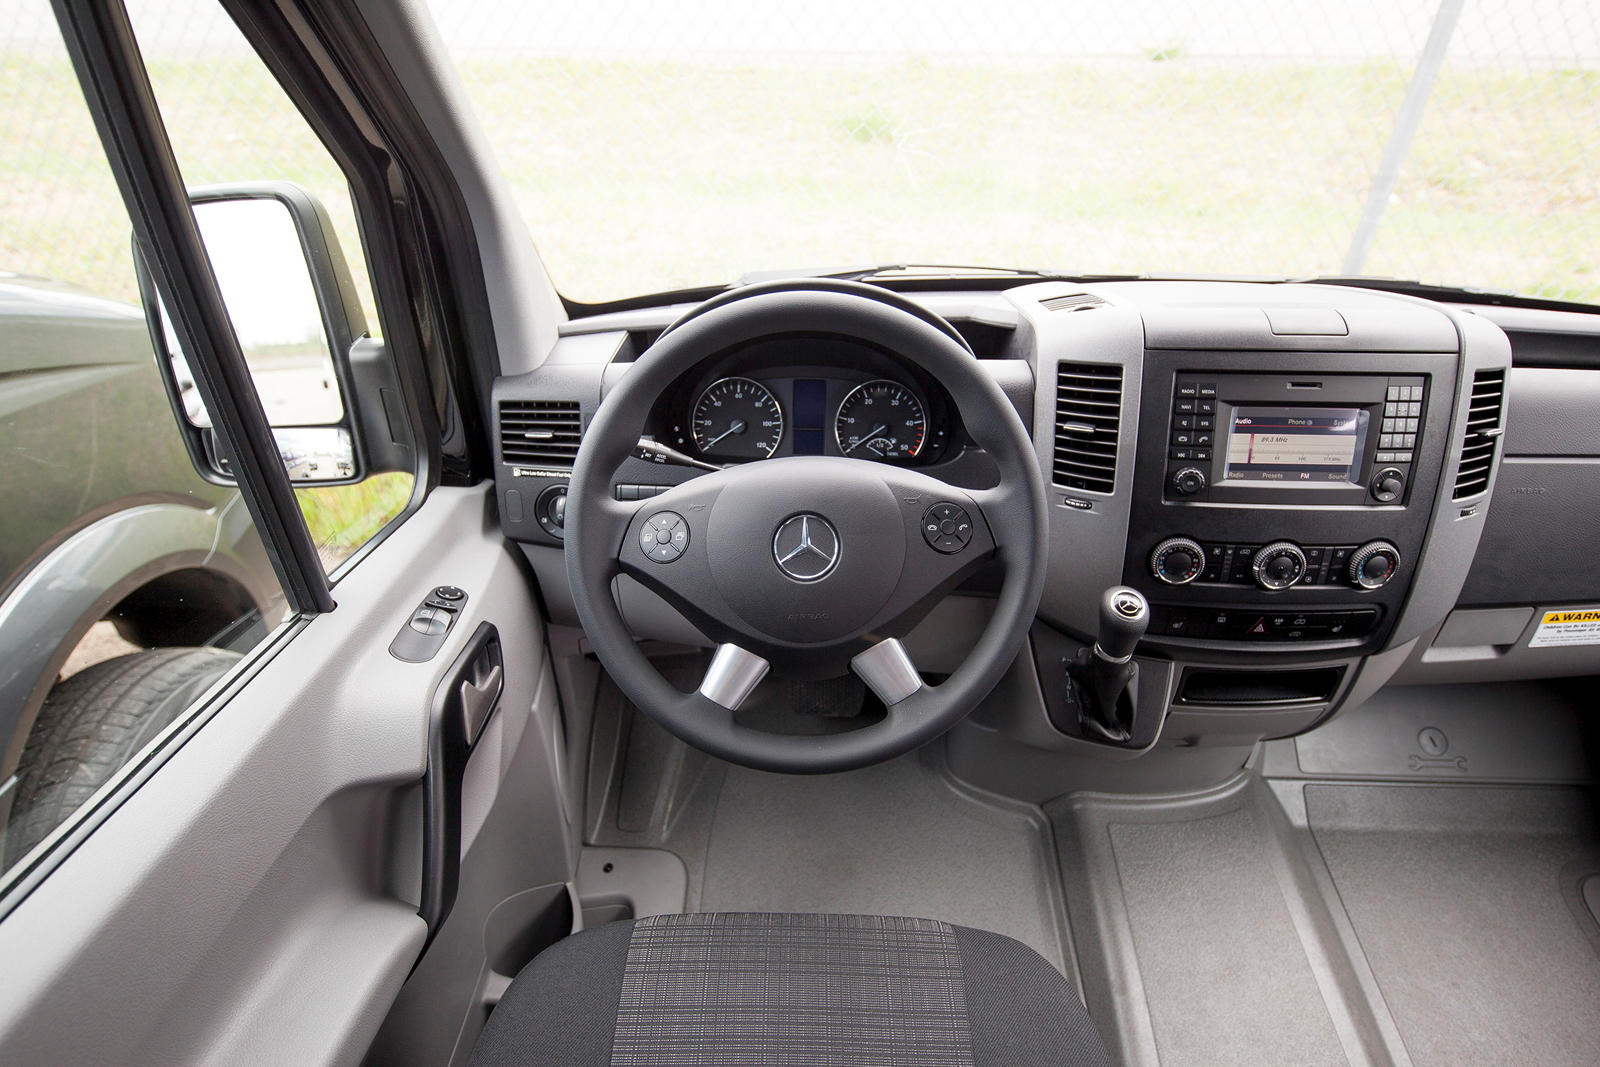 2016 Mercedes-Benz Sprinter Passenger Van Interior Photos | CarBuzz